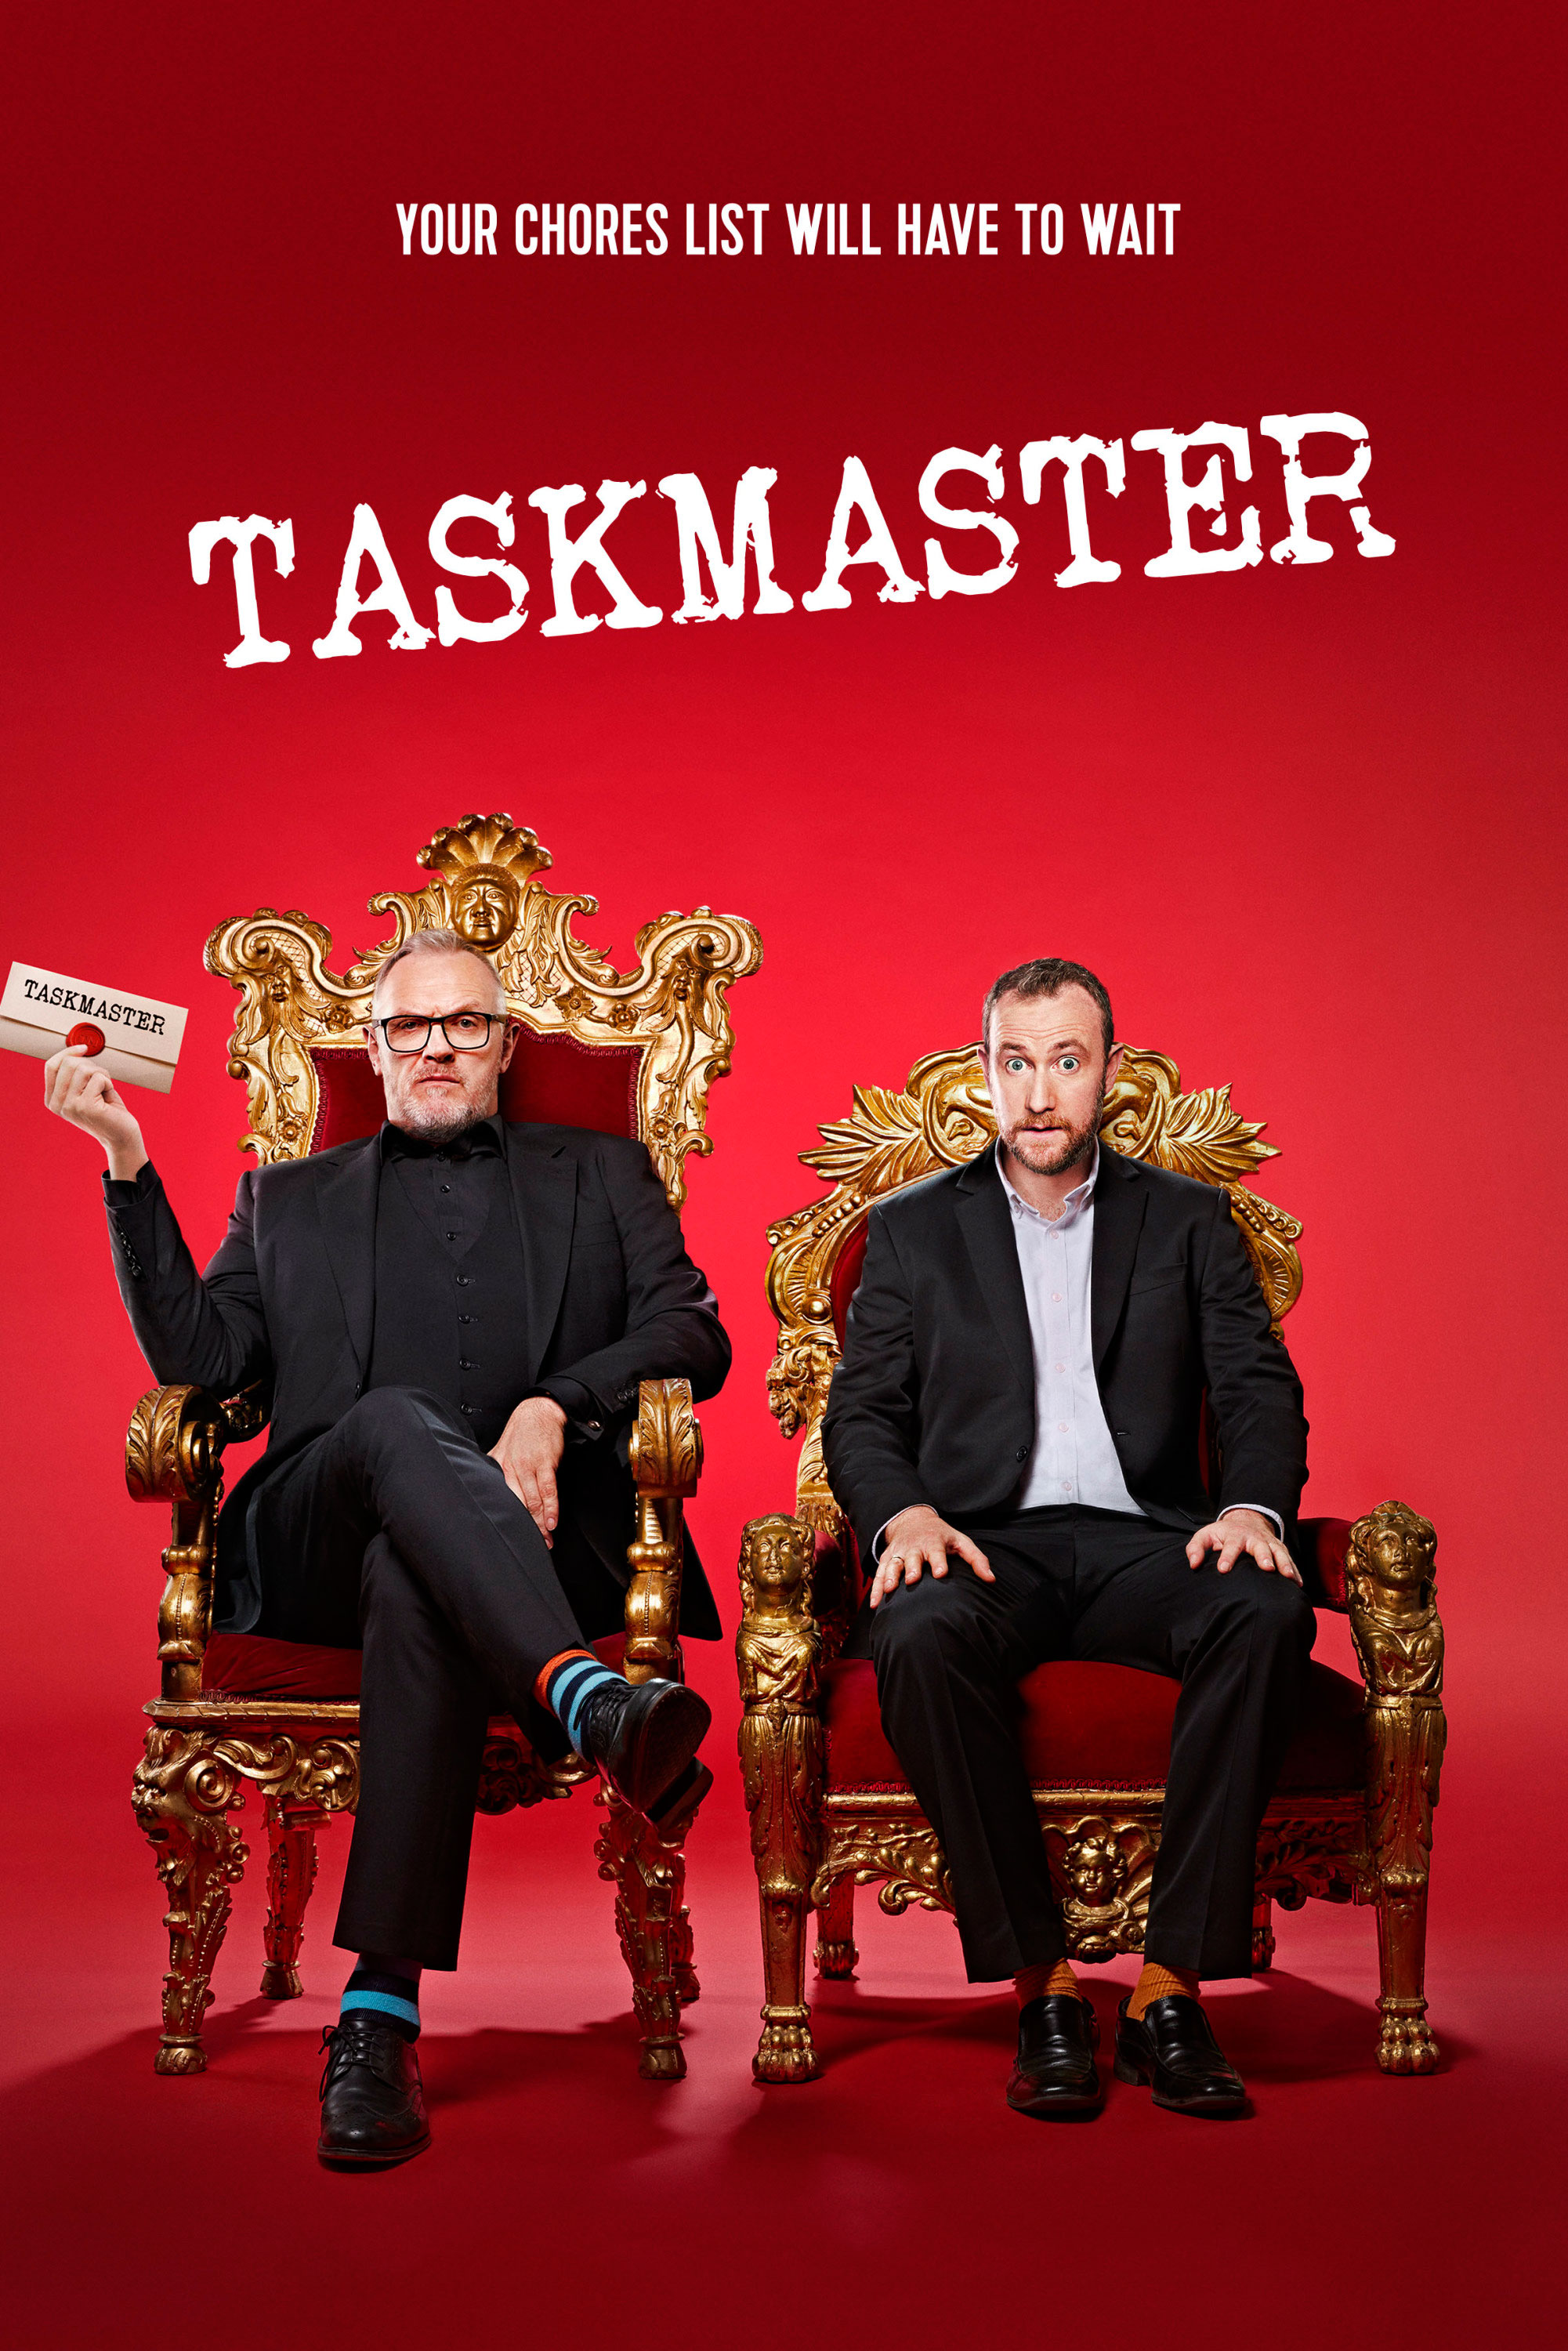 task master tour